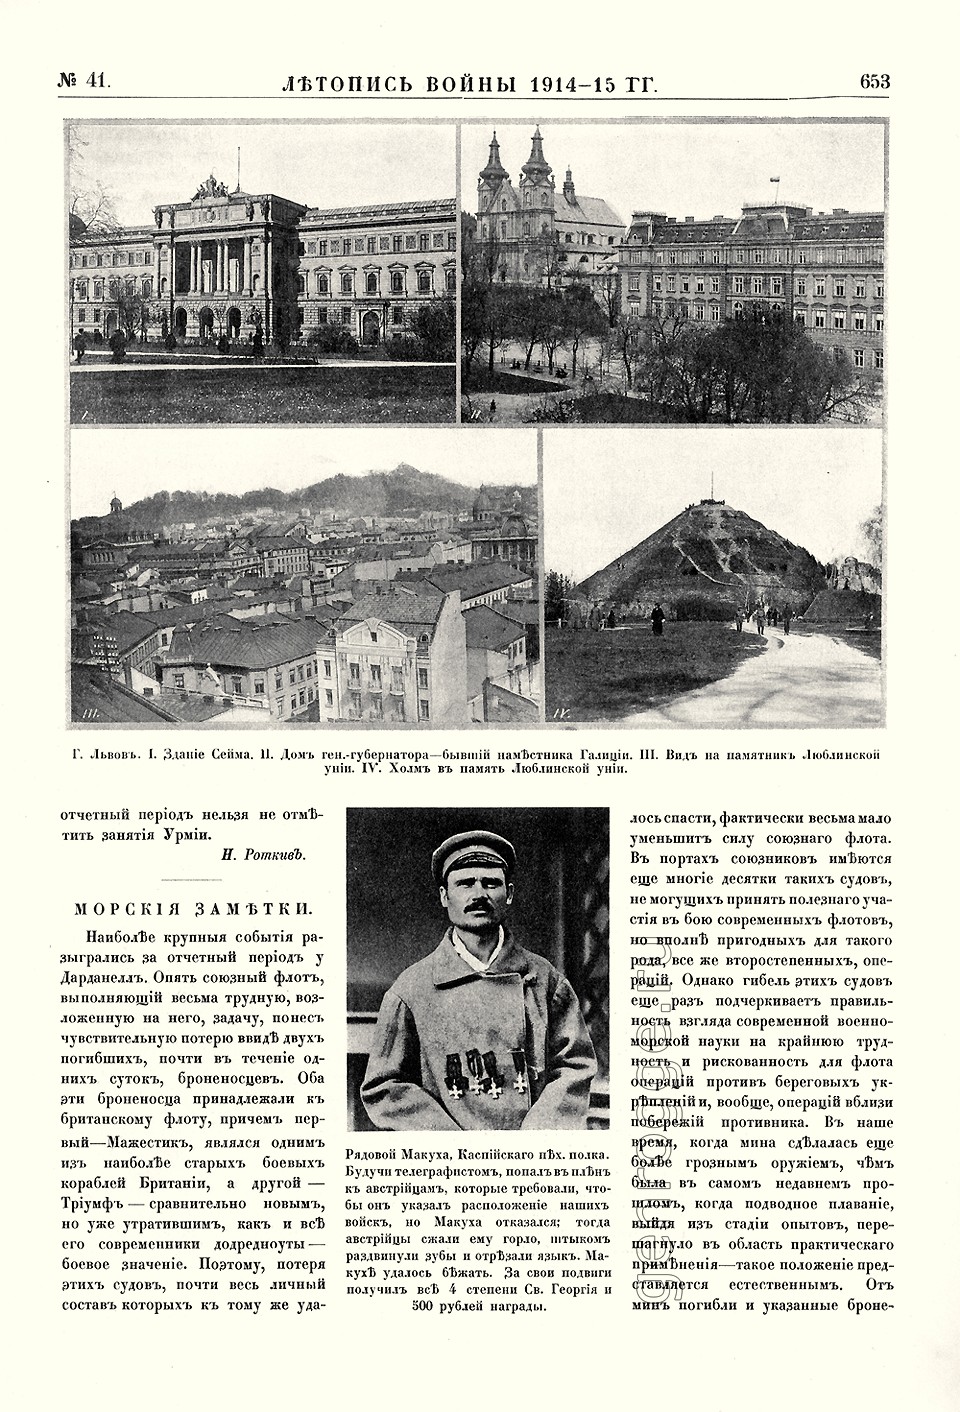   1914-15 . `1915 .,  41, . 653